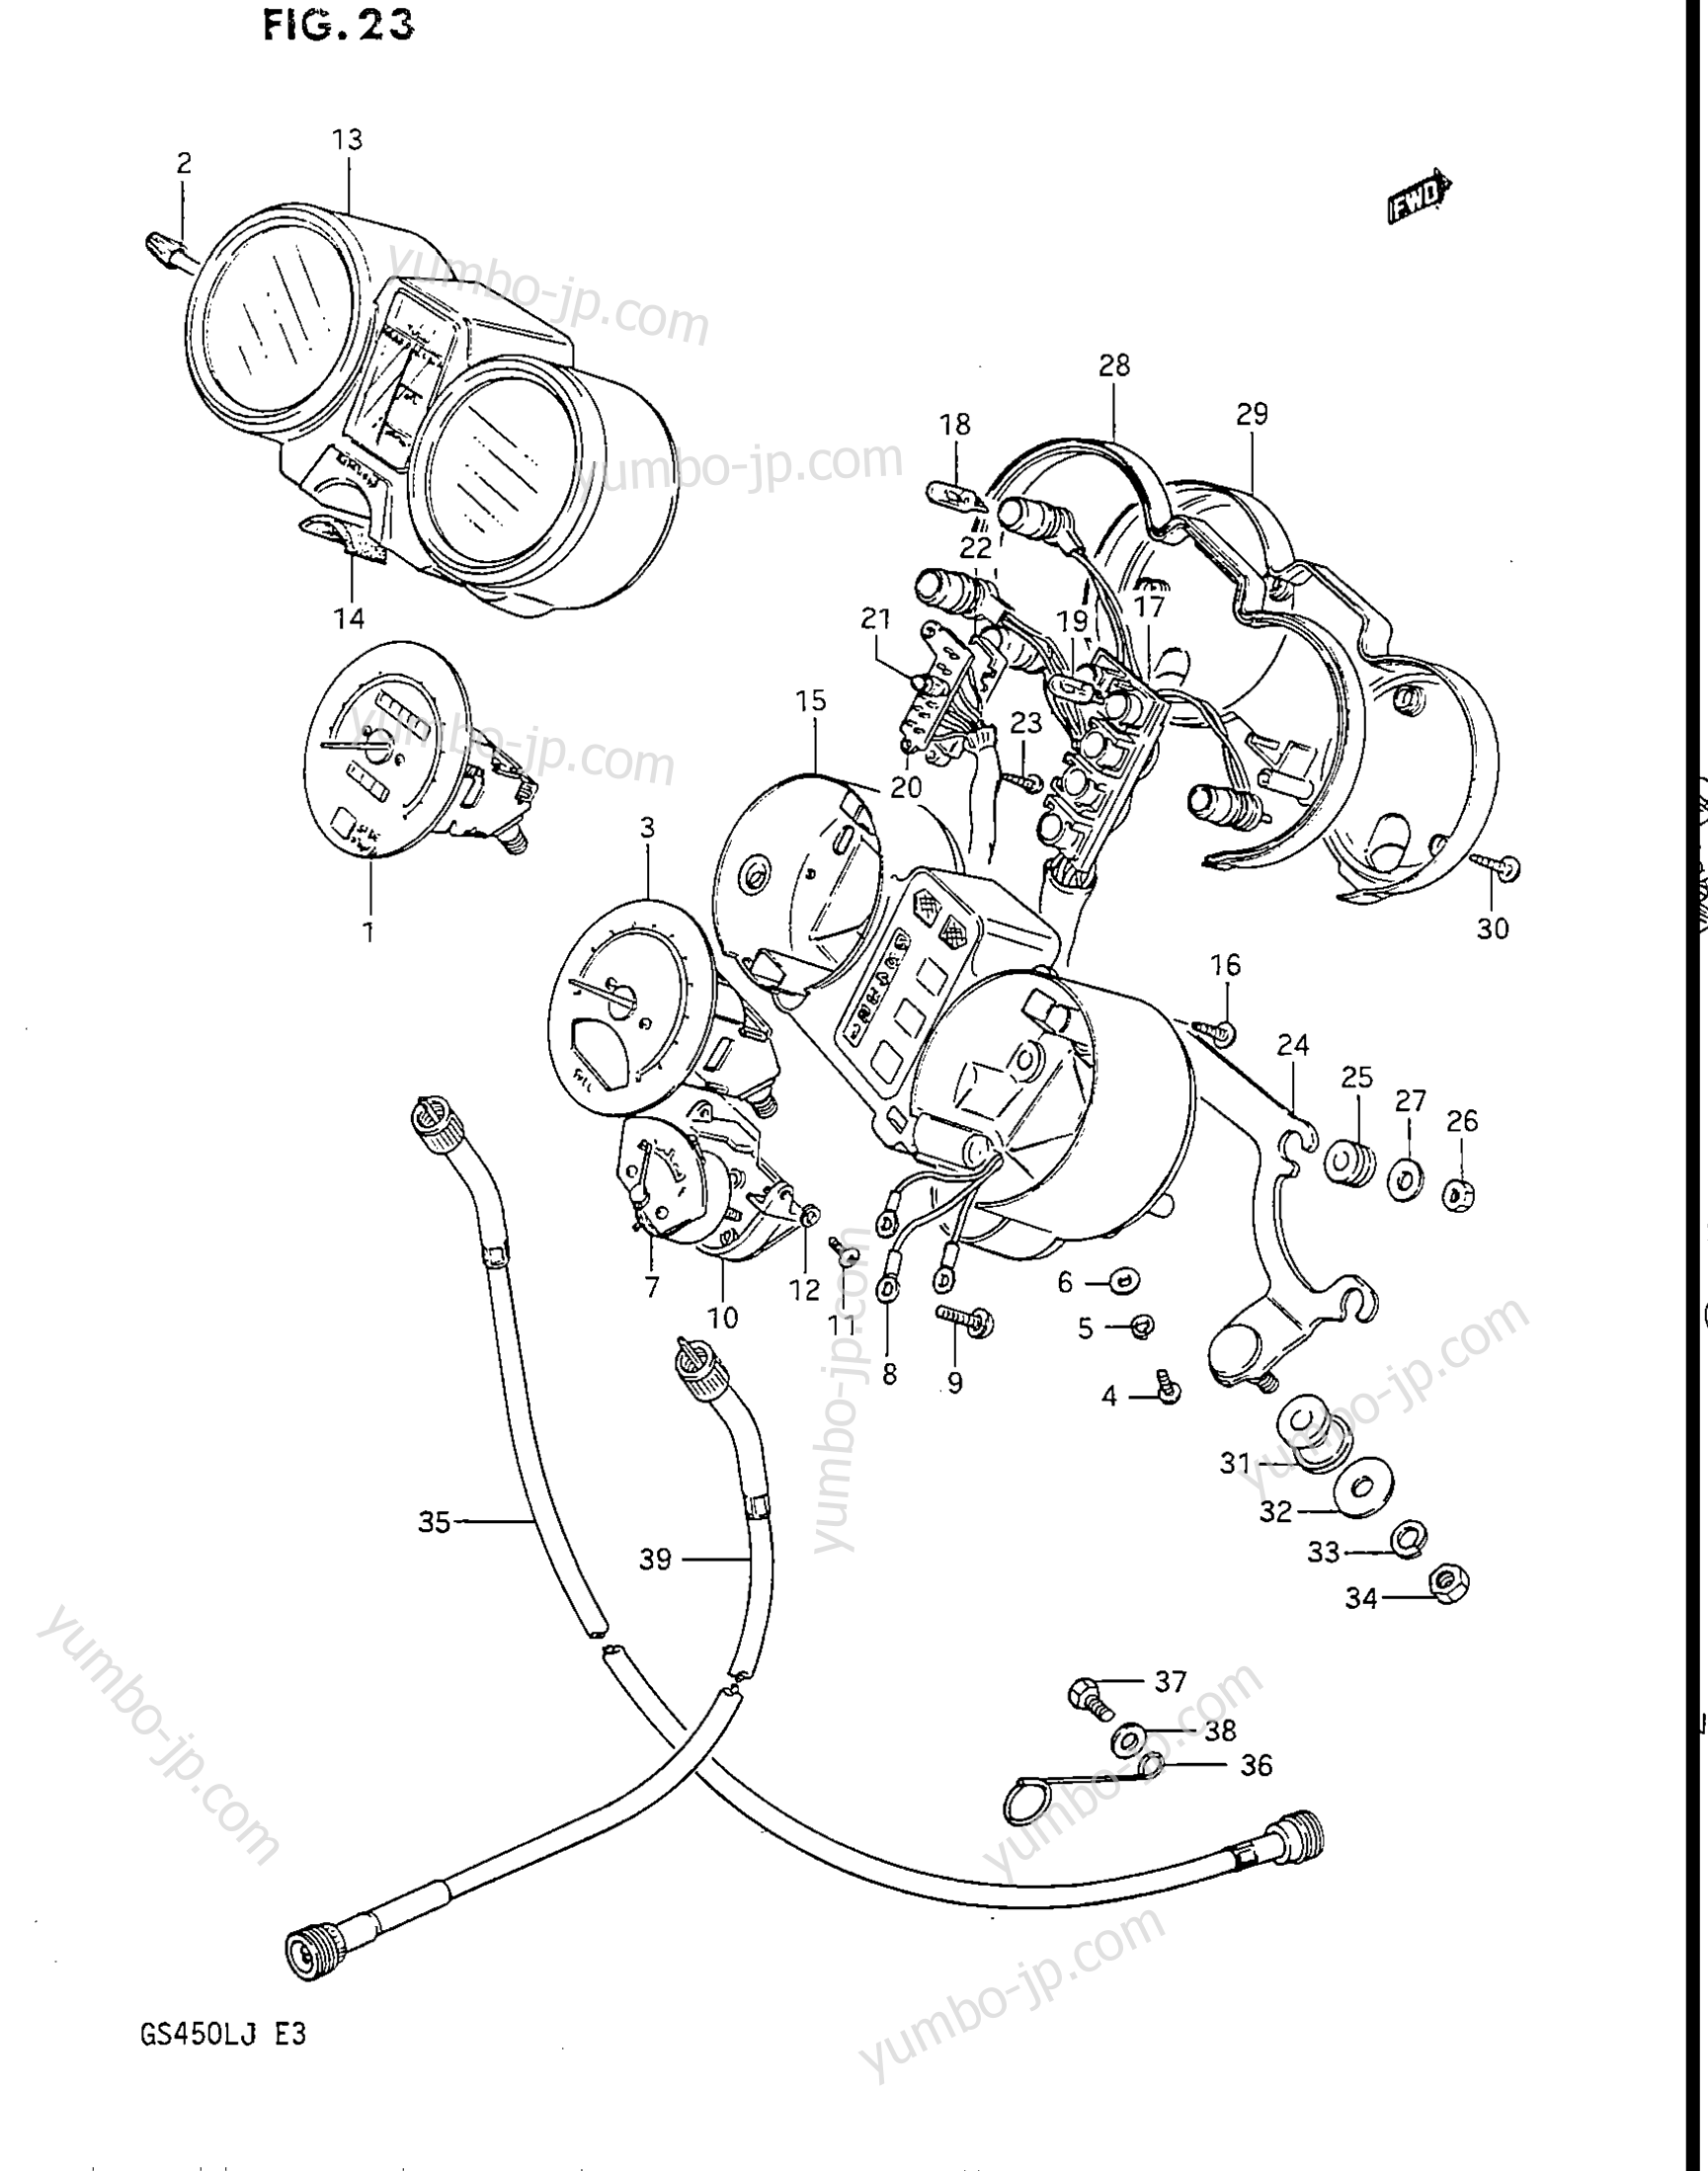 Speedometer - Tachometer for motorcycles SUZUKI GS450L 1988 year